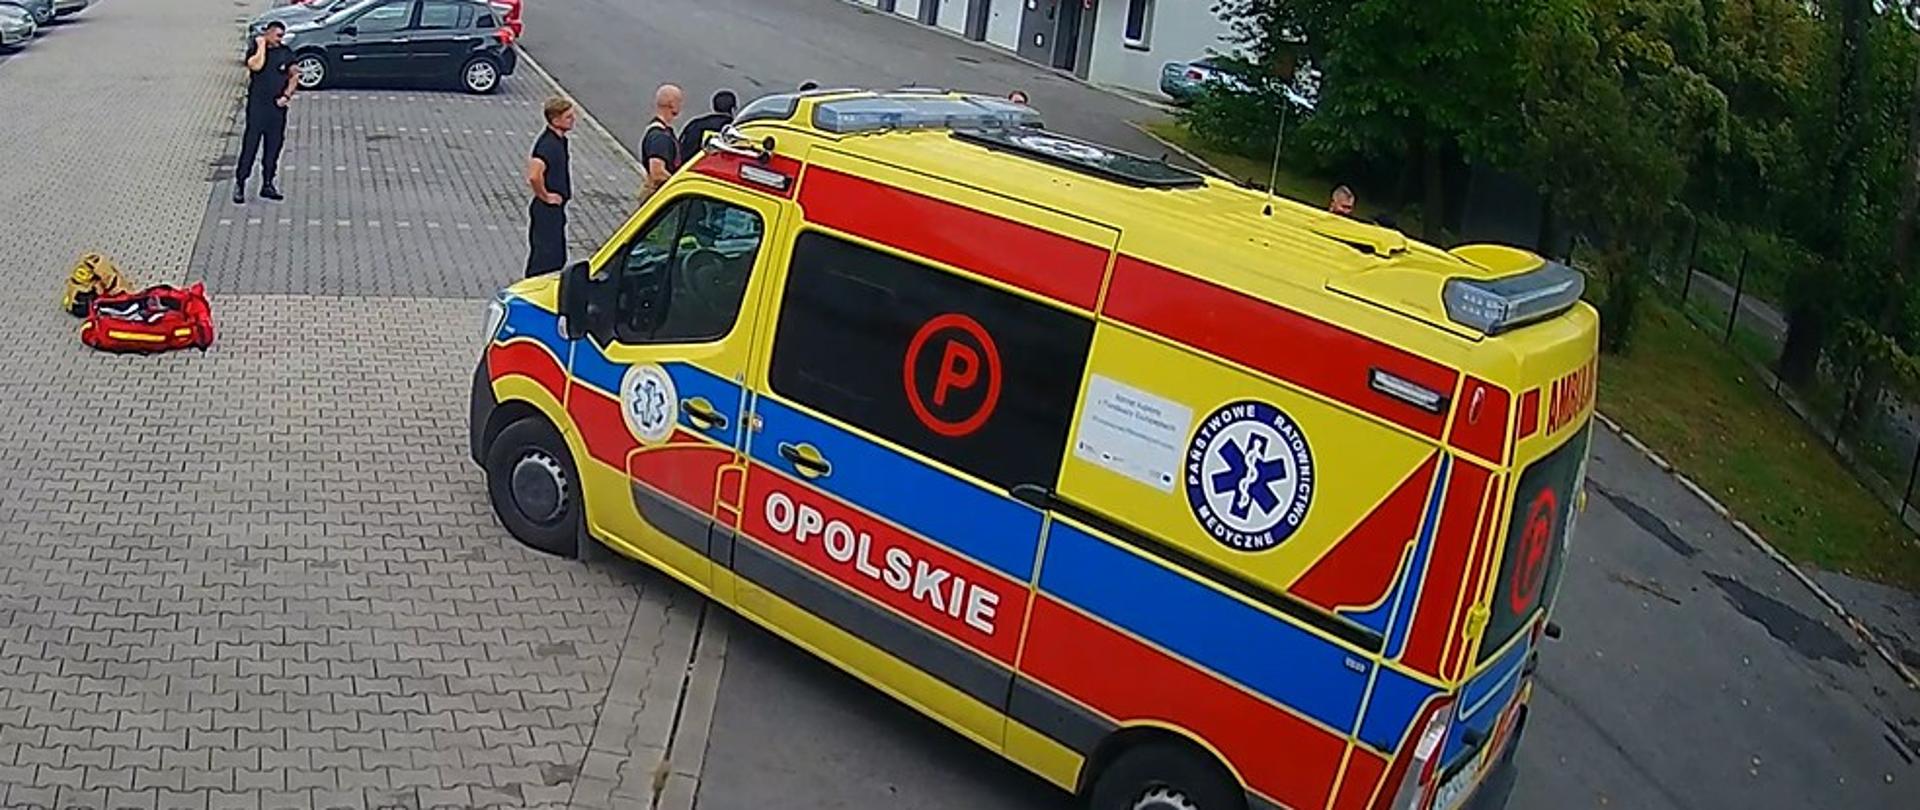 Interwencja strażaków JRG 2 Opole przy kierującej pojazdem osobowym przy nagłym pogorszeniu stanu zdrowia